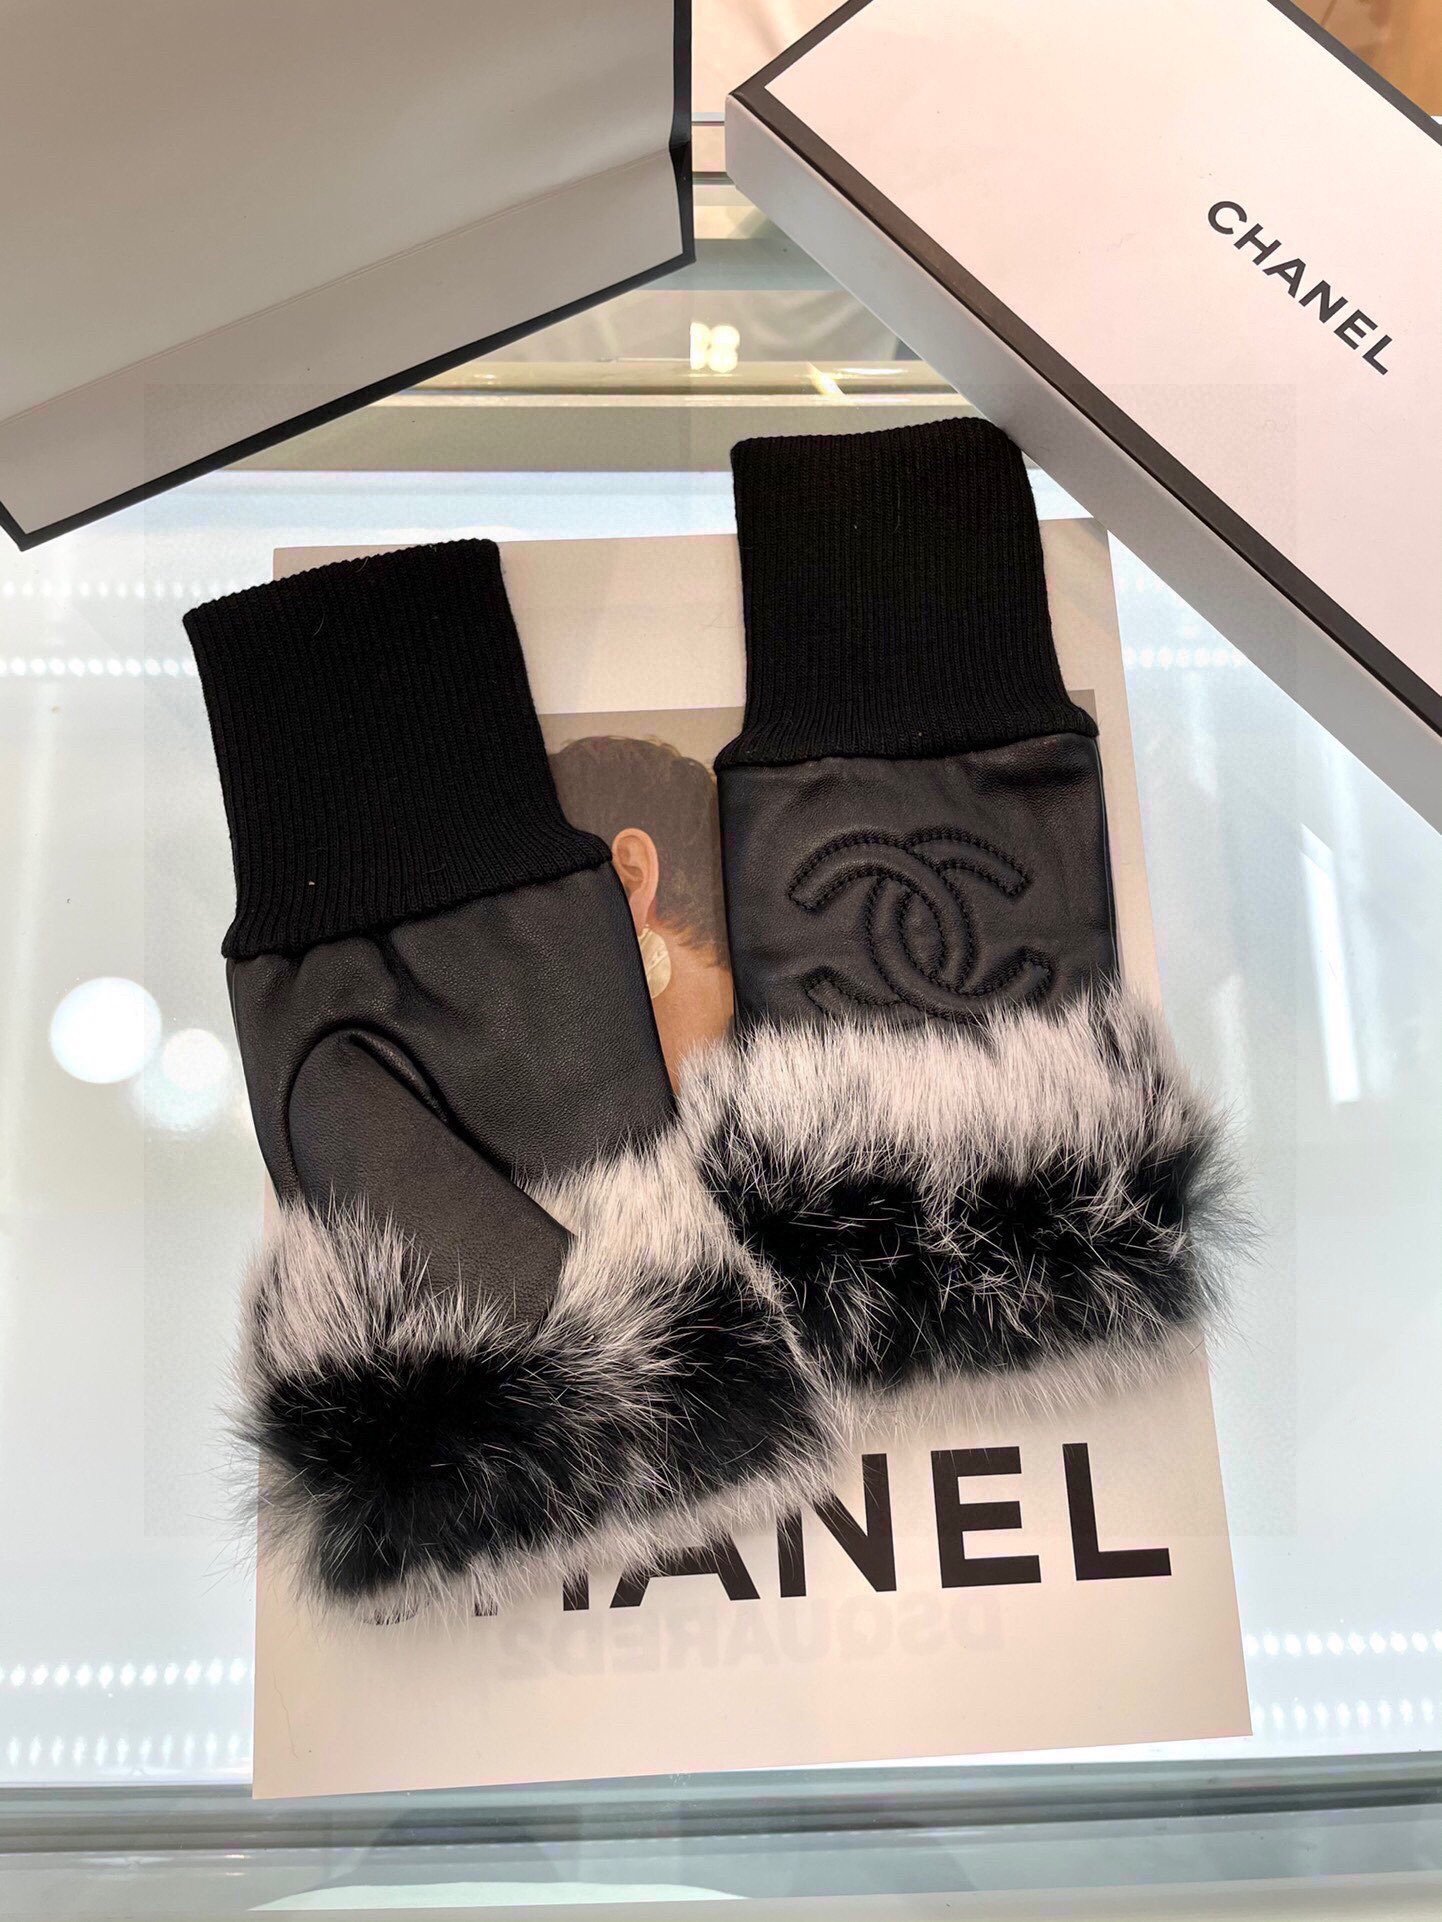 Chanel香奈儿秋冬短款懒兔毛手套值得对比同款不同品质秒杀市场差产品进口一级羊皮懒兔毛内里加绒上手超赞